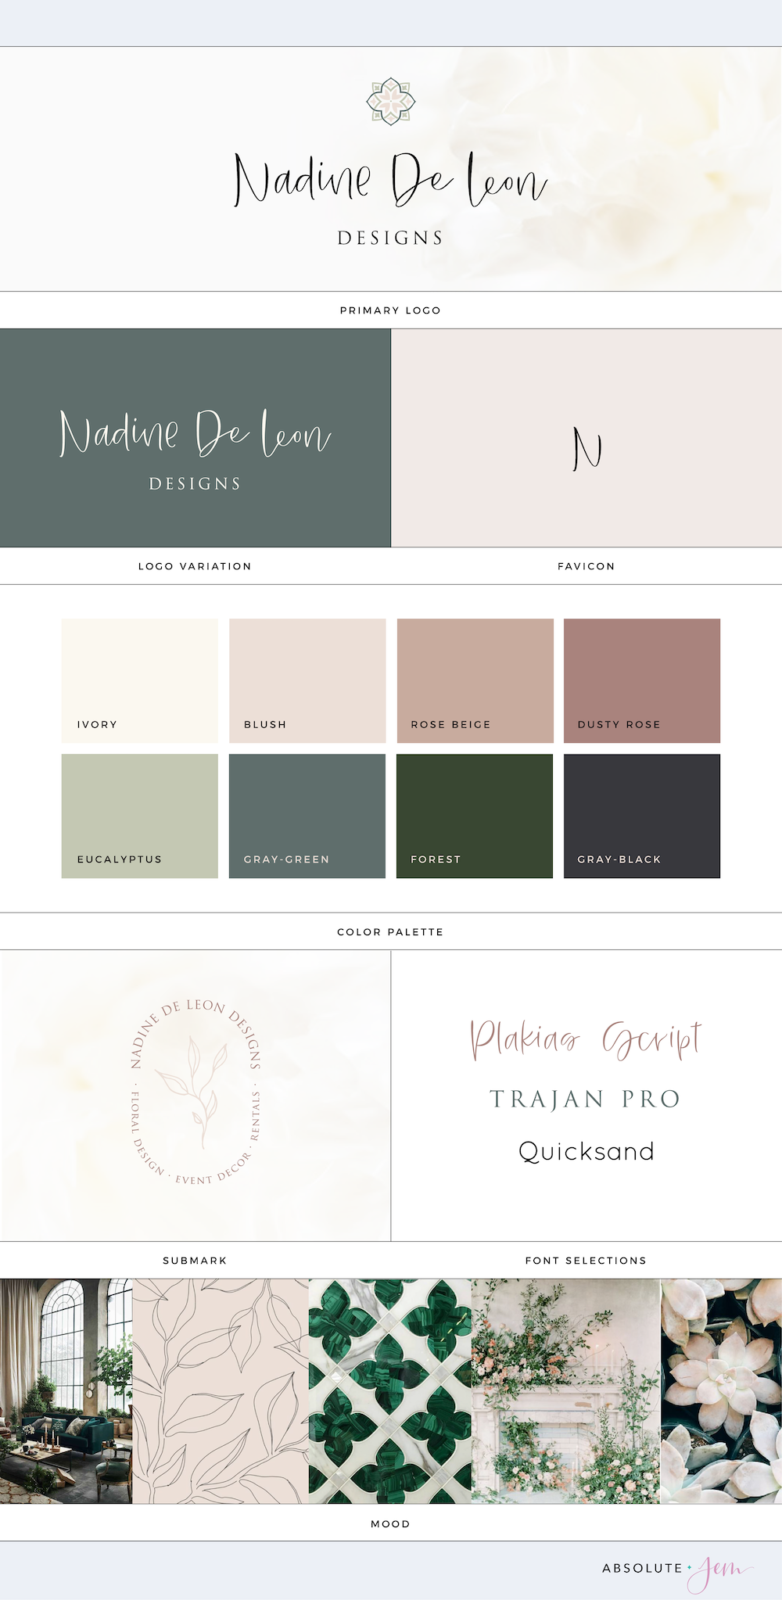 Nadine De Leon Designs Brand Board| Wedding branding by Absolute JEM